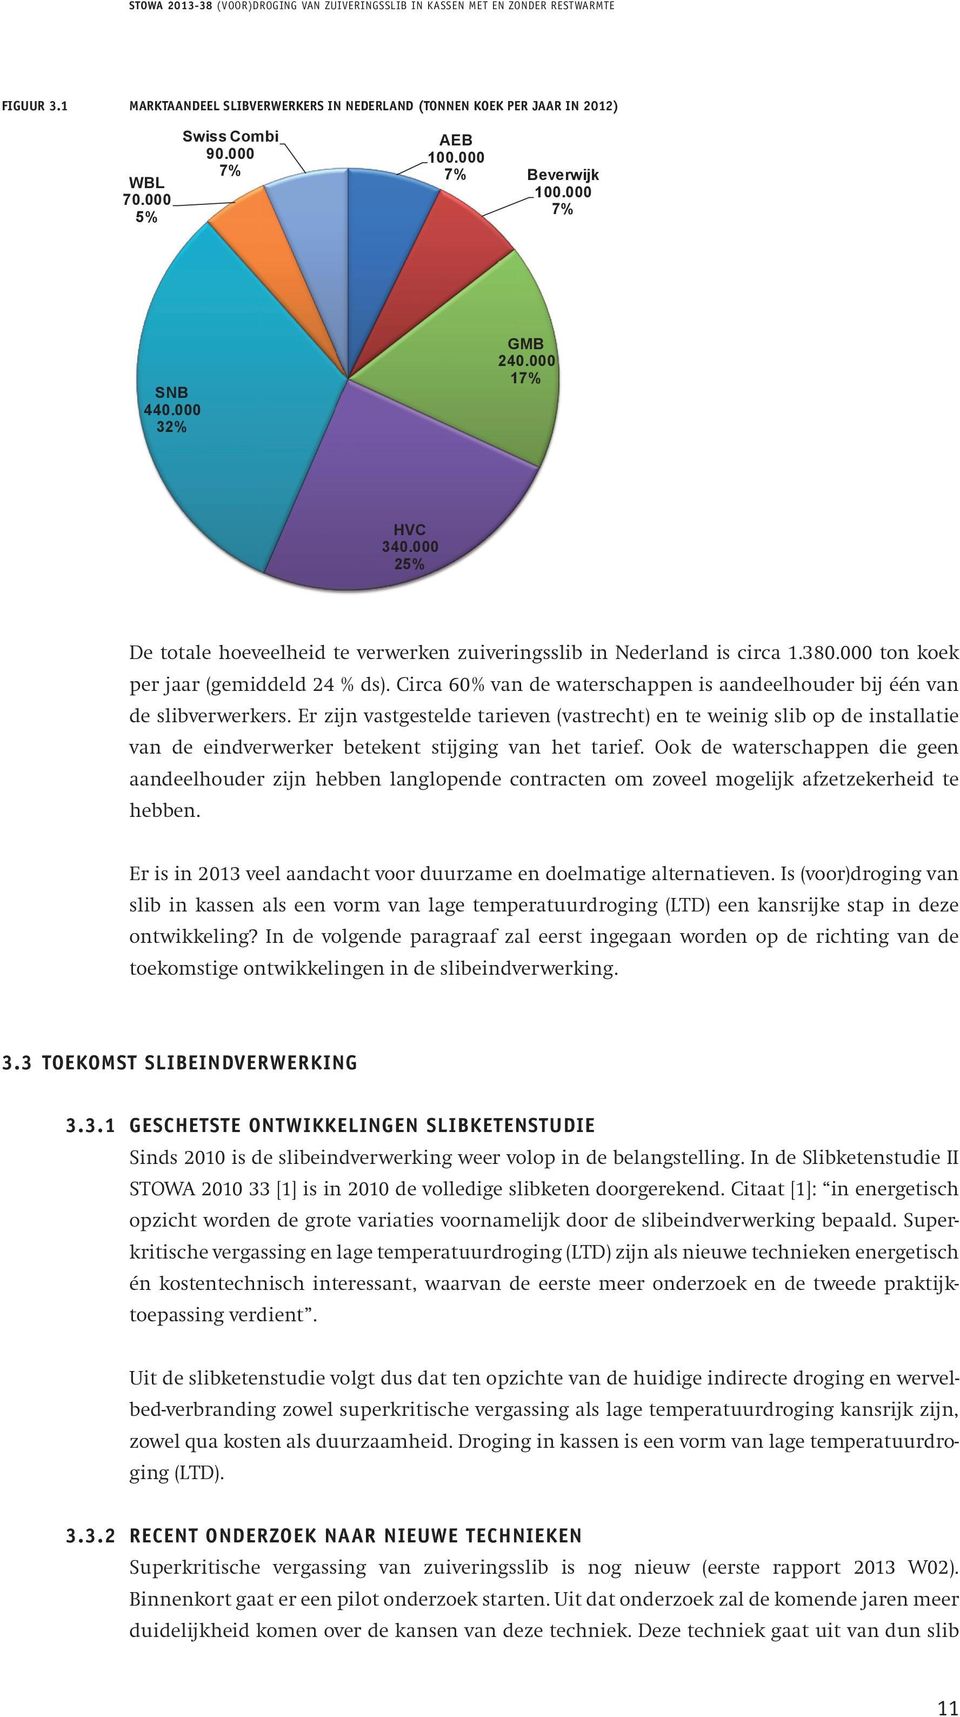 000 25% Figuur 3.1 Marktaandeel De totale slibverwerkers hoeveelheid in te Nederland verwerken (tonnen zuiveringsslib koek per jaar in Nederland in 2012) is circa 1.380.